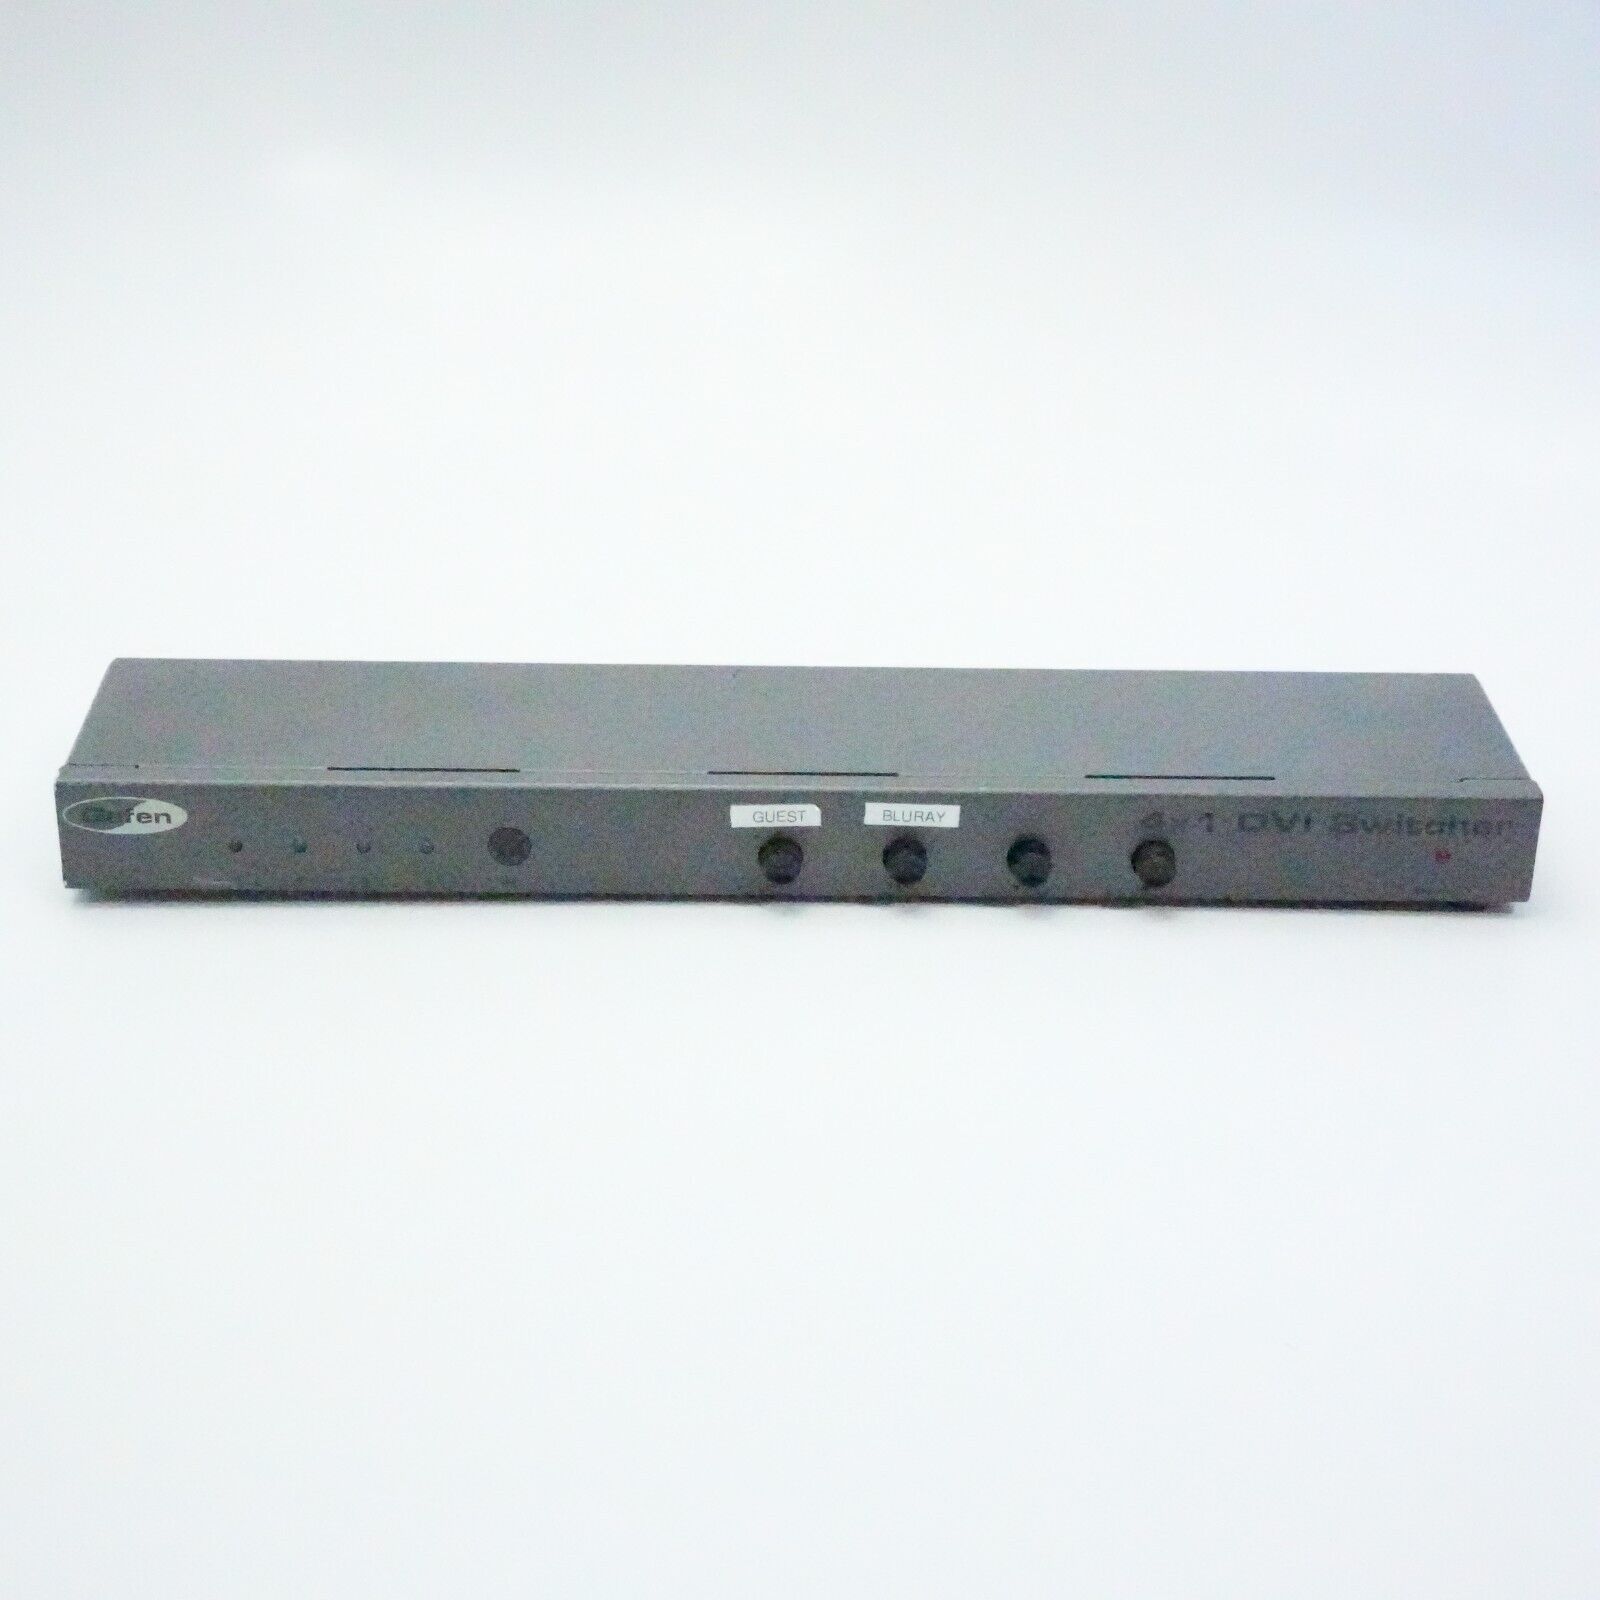 Gefen EXT-DVI-441N 4 x 1 DVI Switcher Switch - No Cord